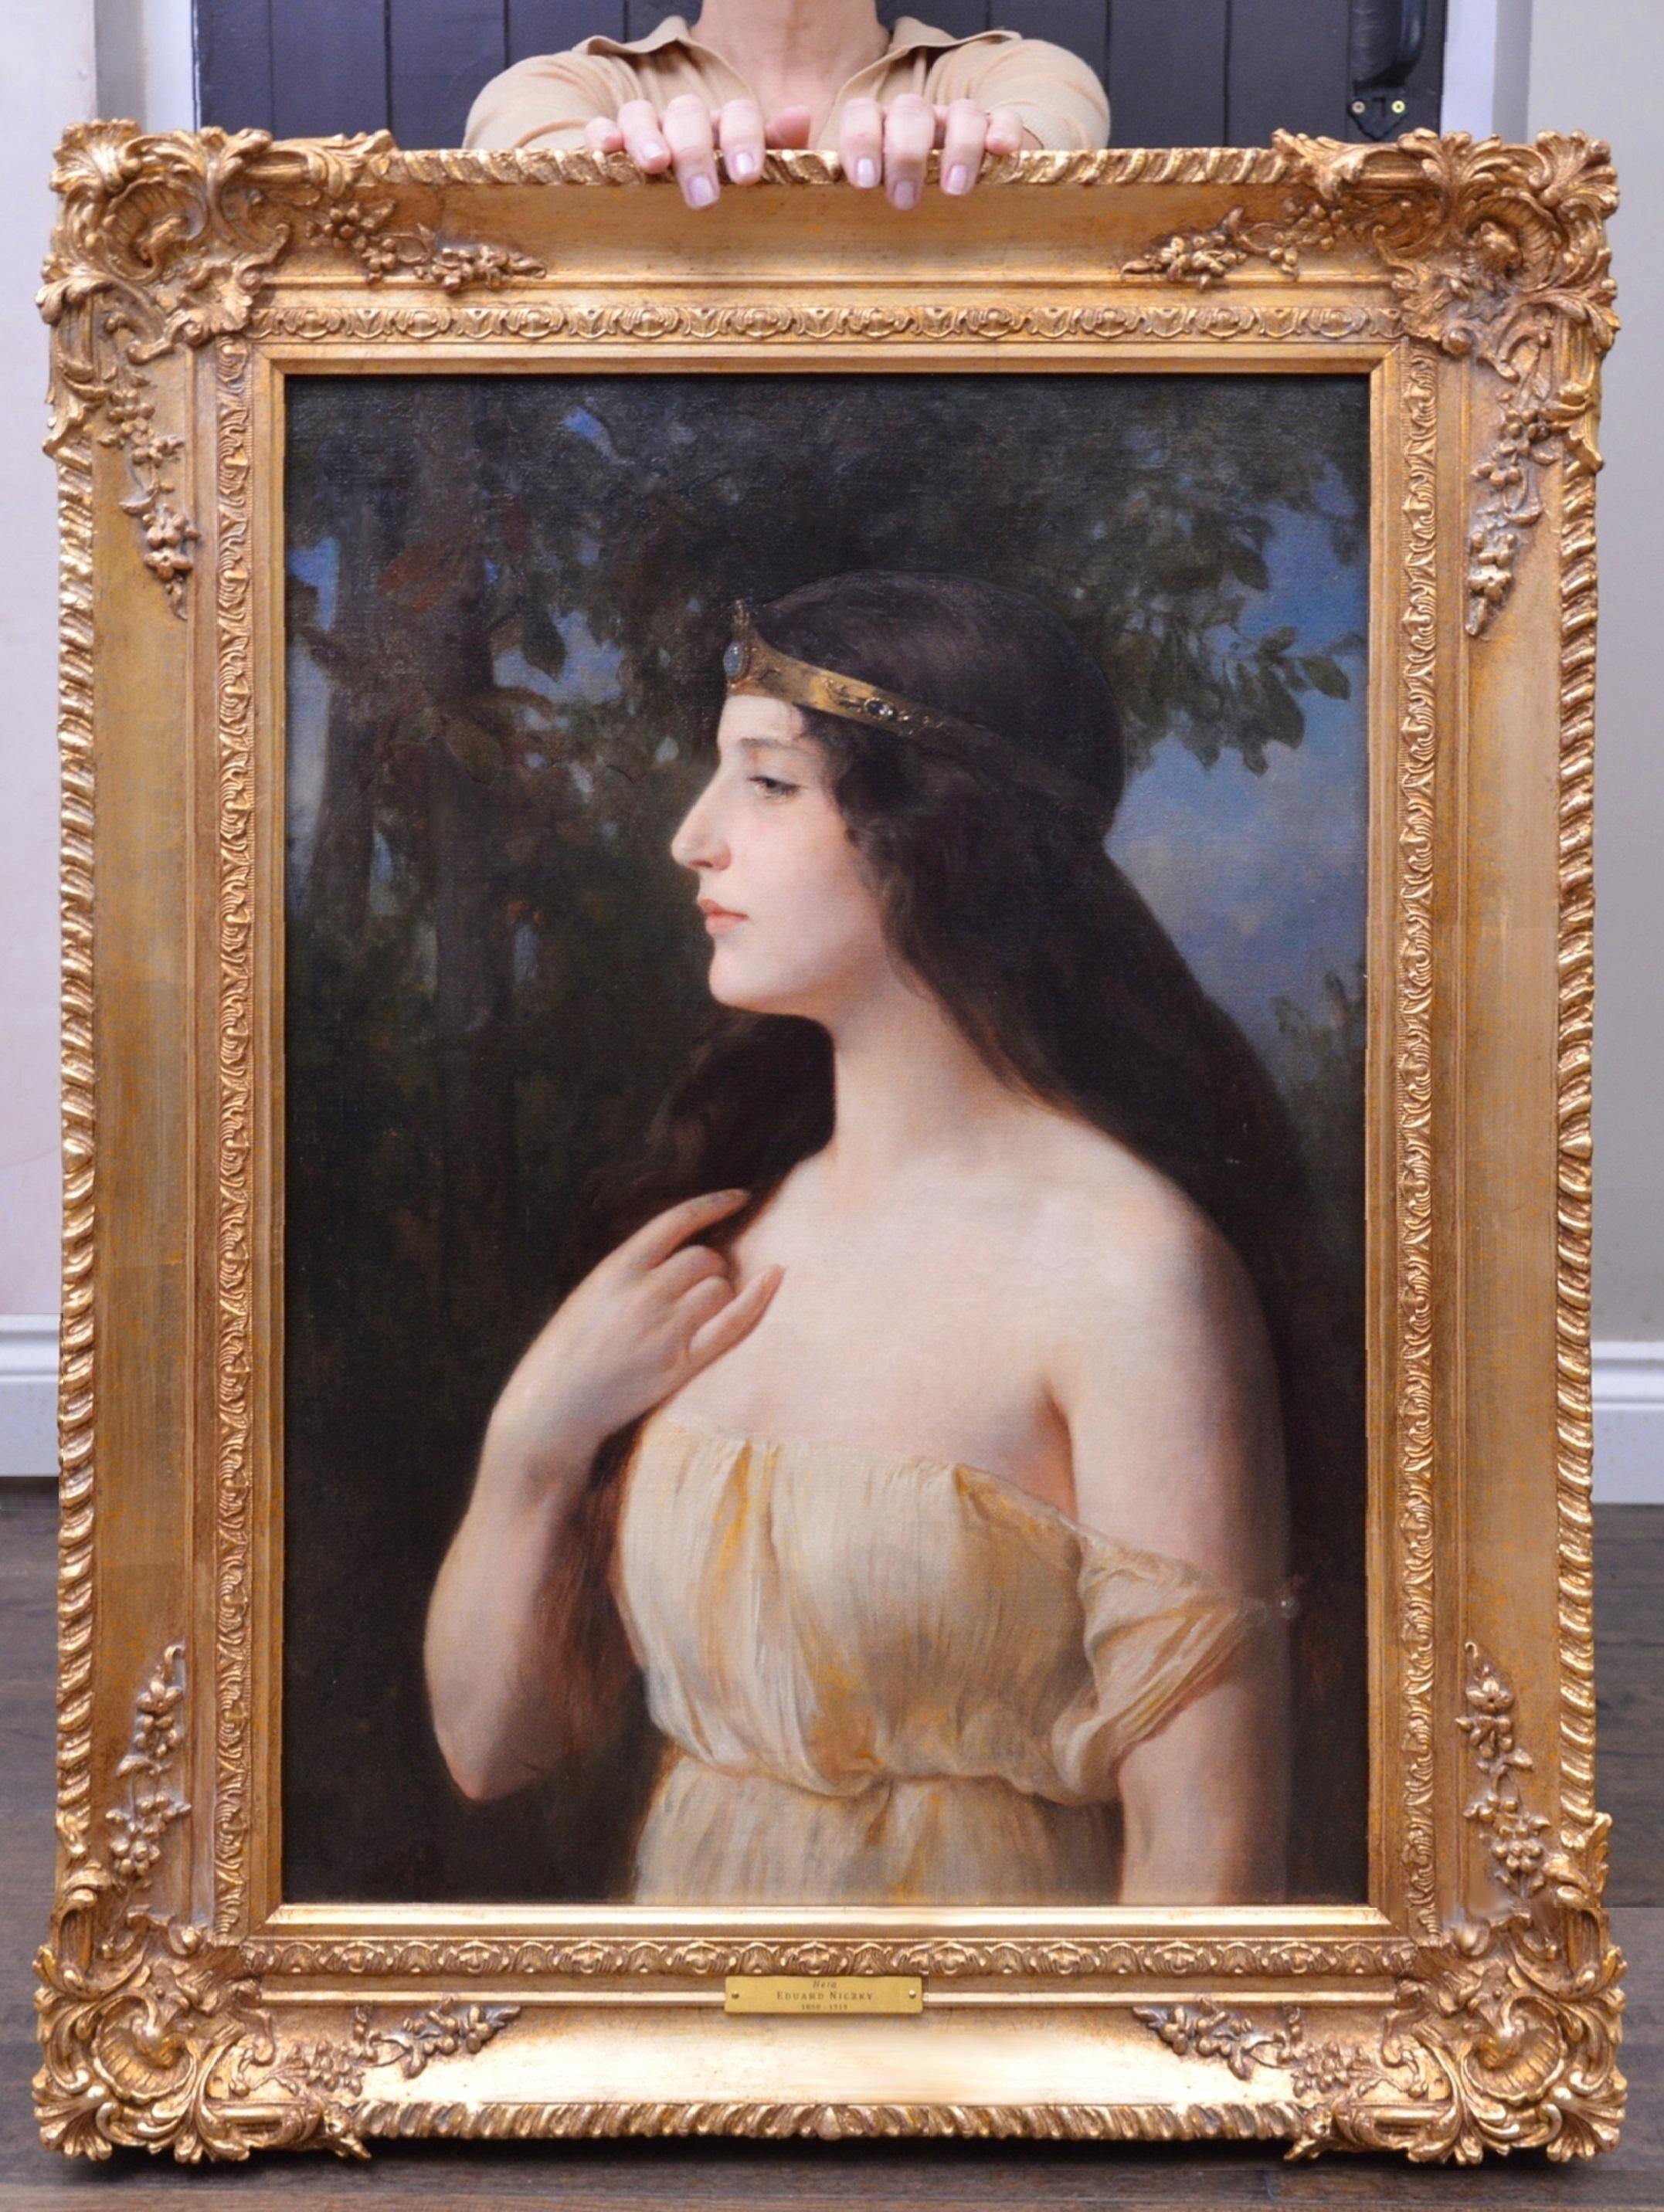 Eduard Niczky Portrait Painting – Goddess Hera - Neoklassizistisches Ölgemälde der griechischen Mythologie aus dem 19. Jahrhundert